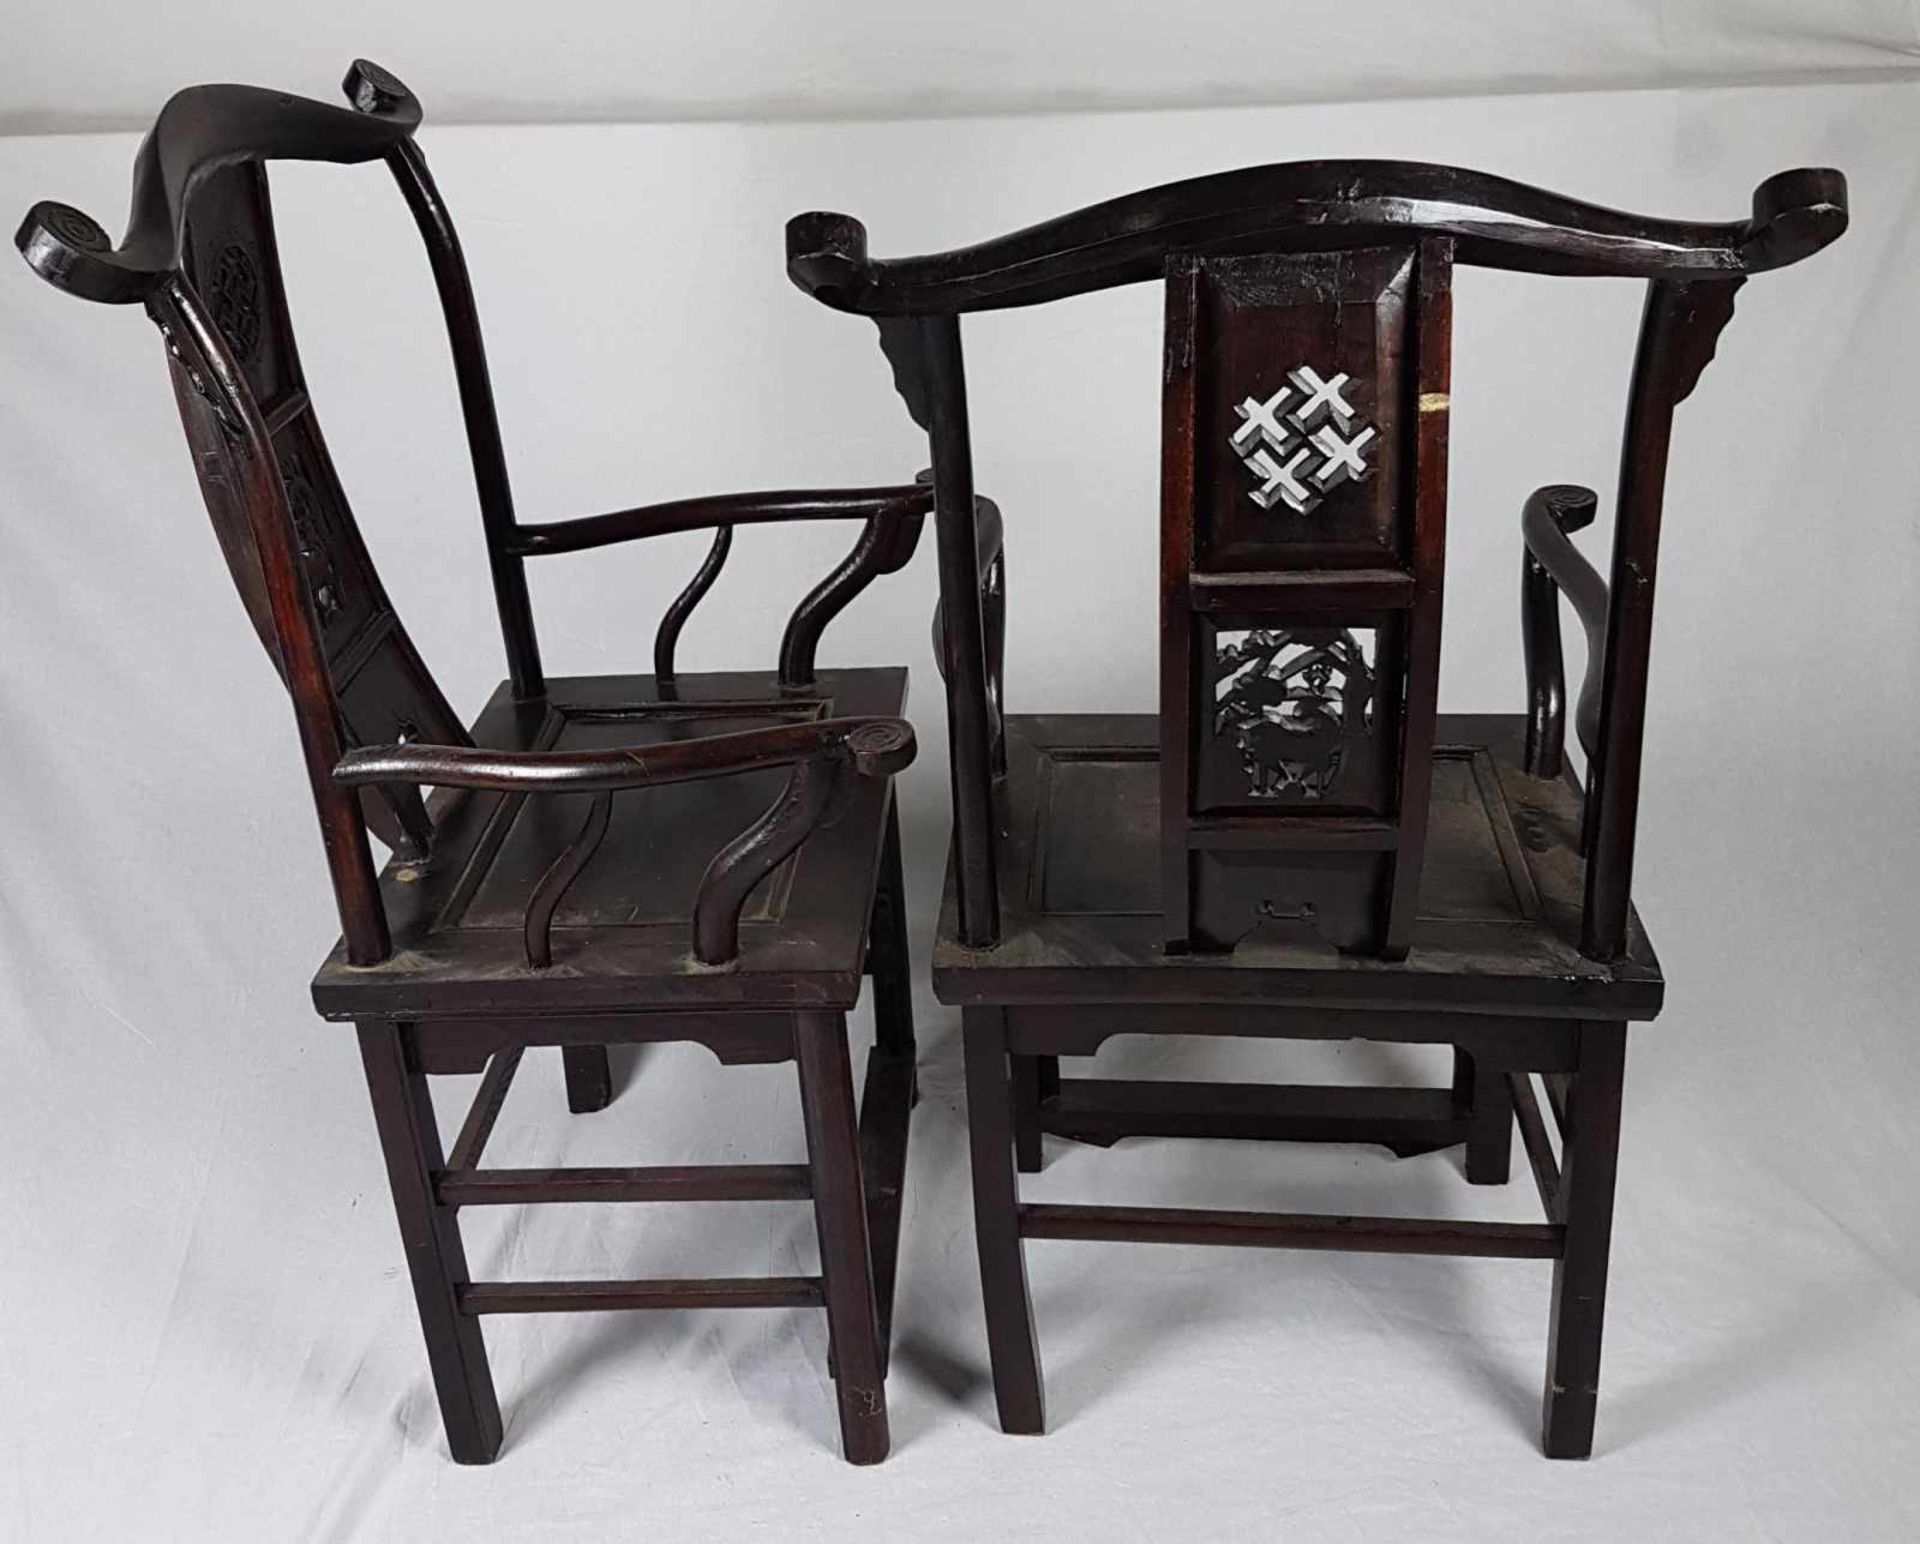 Paar Armlehnstühle - China,wohl Yumu-Holz (Ulme),dunkel gebeizt,mehrere Stege zwischen den Beinen, - Bild 4 aus 4